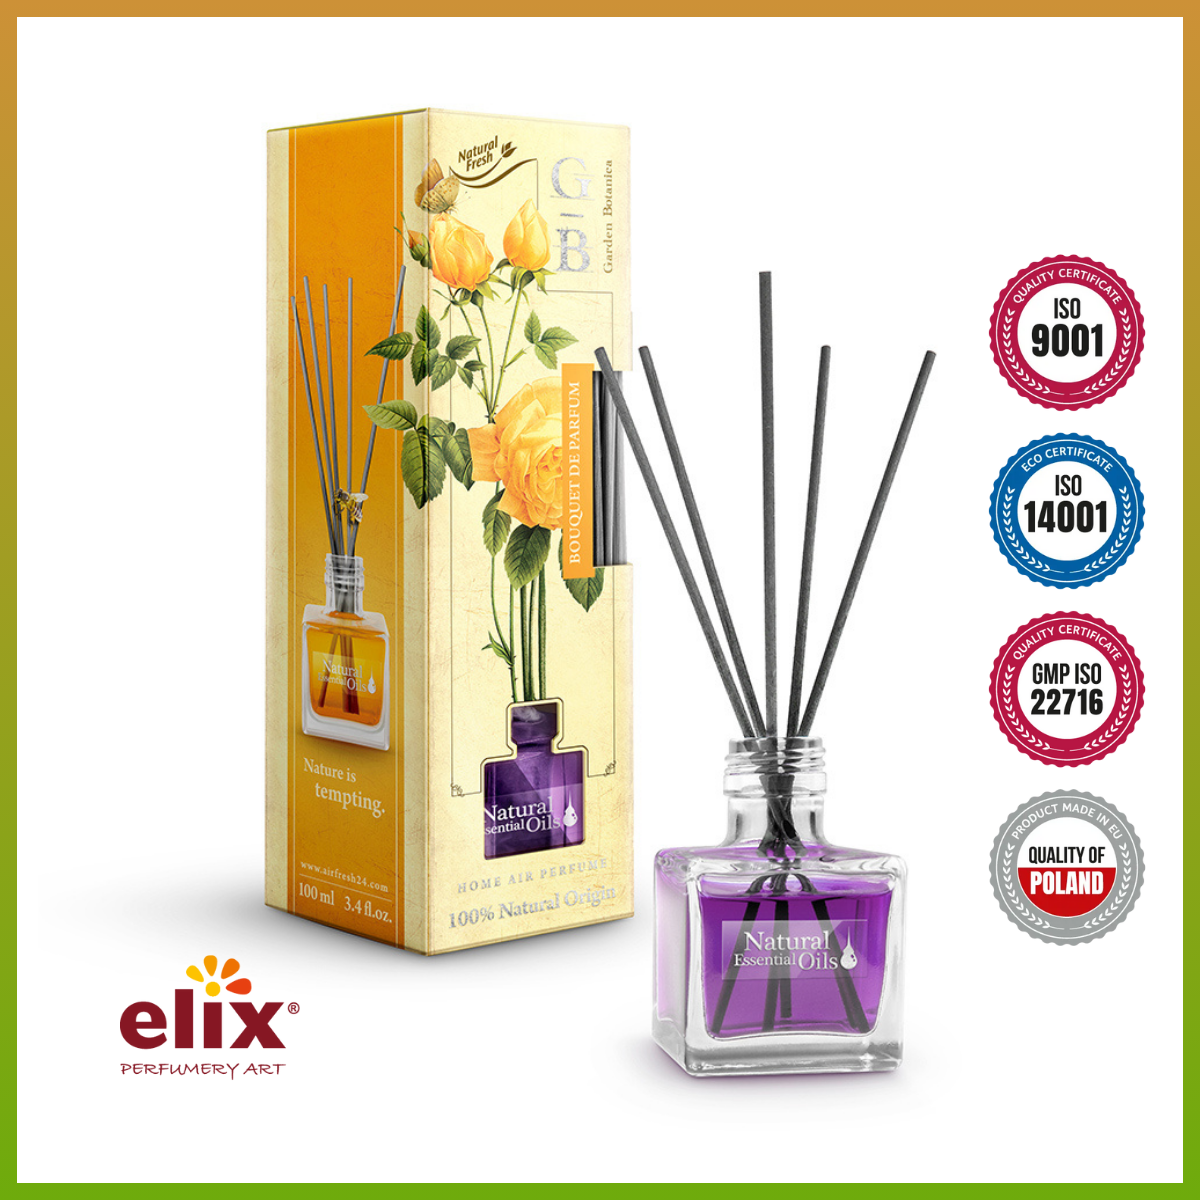 Hình ảnh Nước hoa thơm phòng Elix - Garden Botanica - Hương Bouquet de Perfum (The Mát) - 100ml Nhập khẩu từ balan, hương thơm tự nhiên, lưu hương lâu